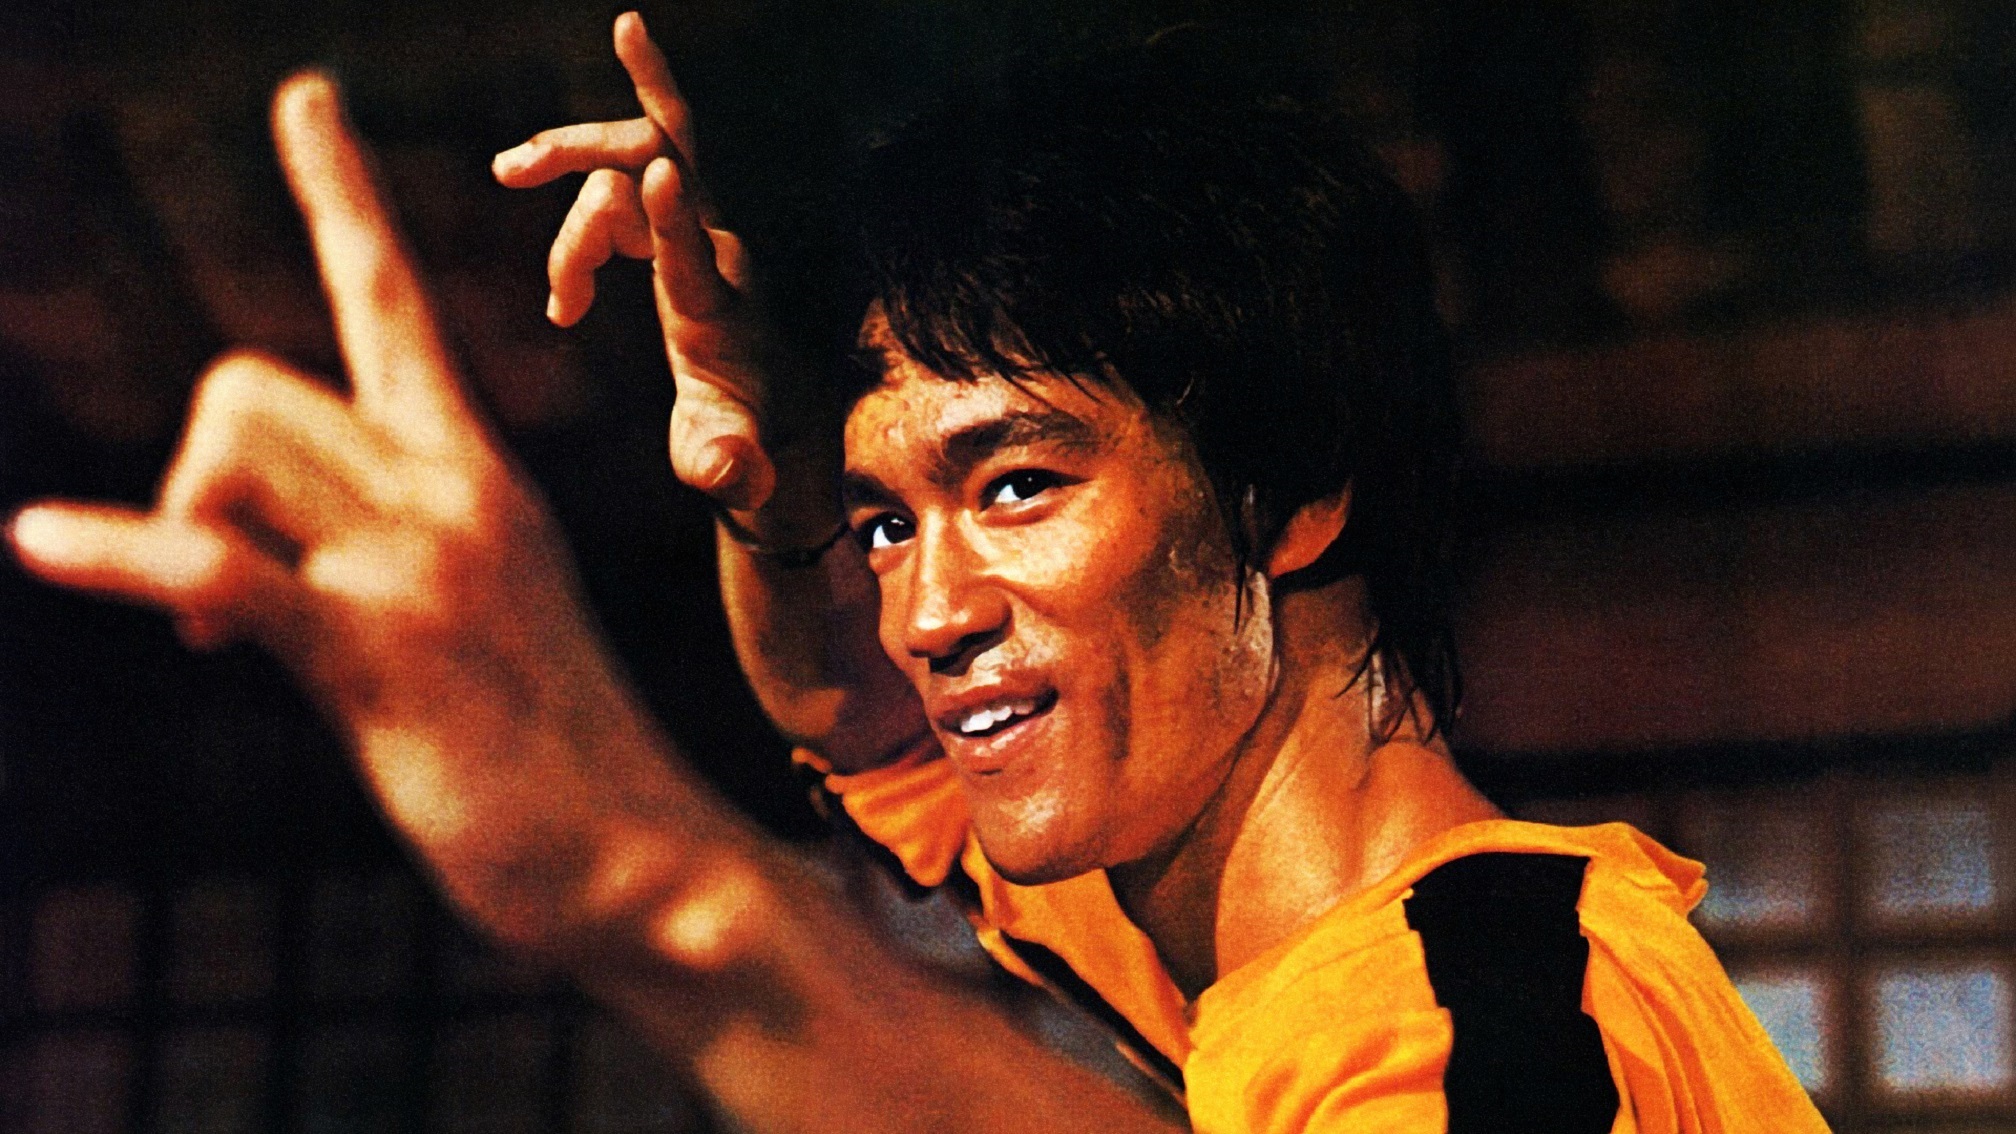 Bruce Lee [credit: courtesy of Ufficio Stampa RAI]